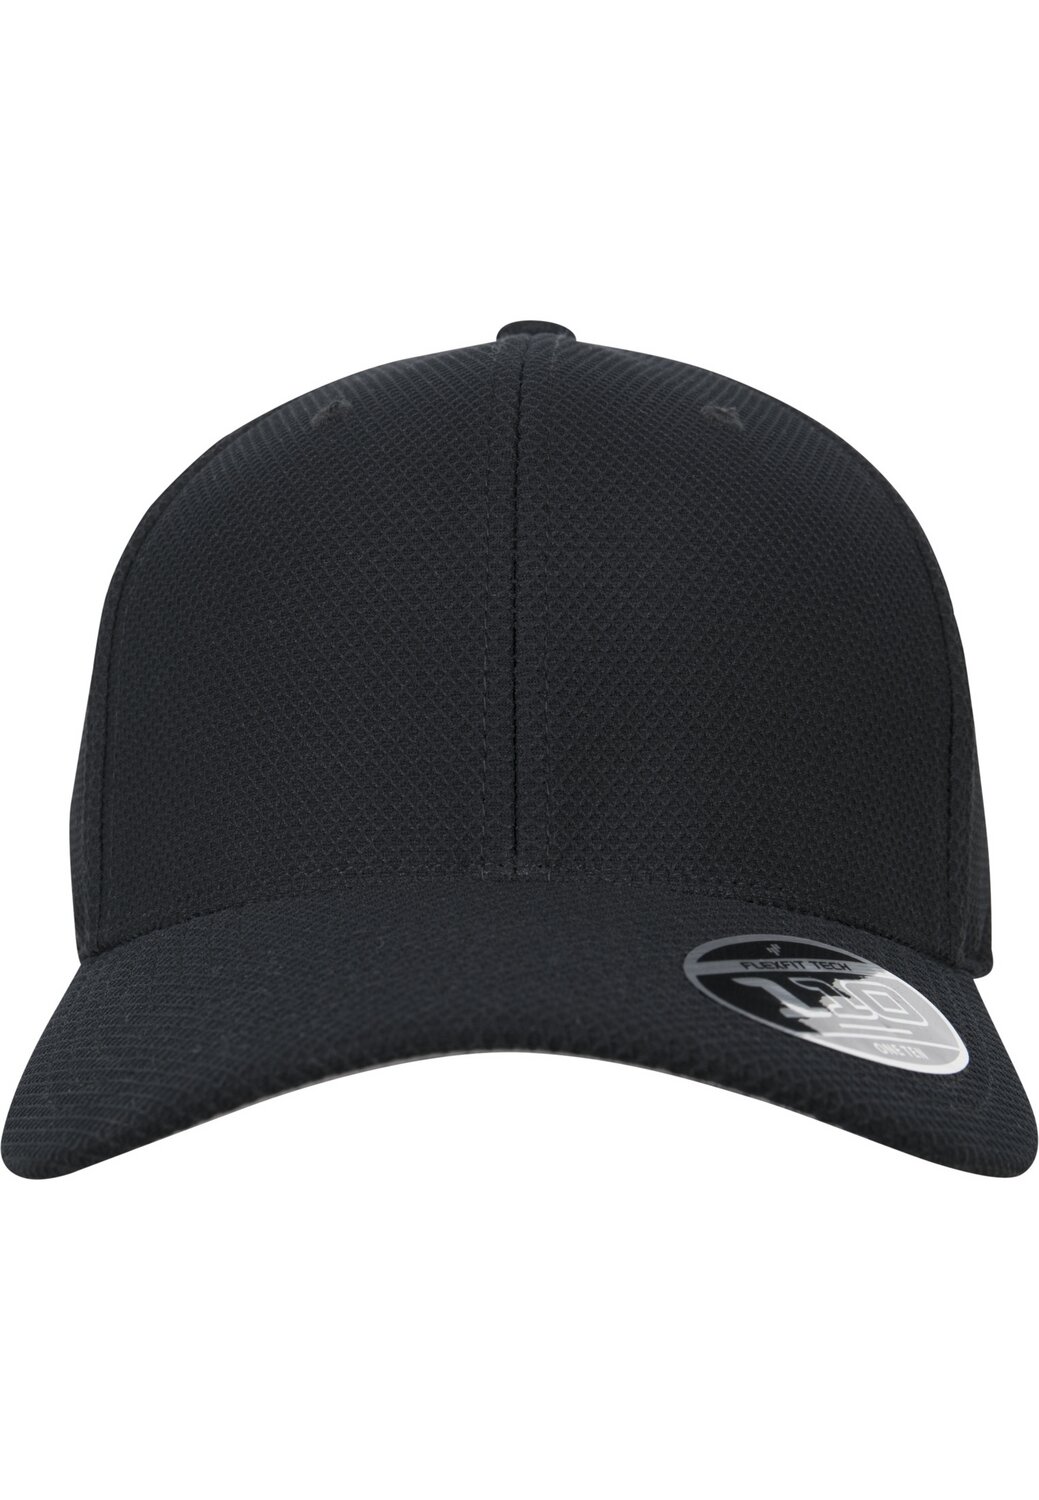 | MAXISCOOT 110 black Hybrid Flexfit Cap Baseball